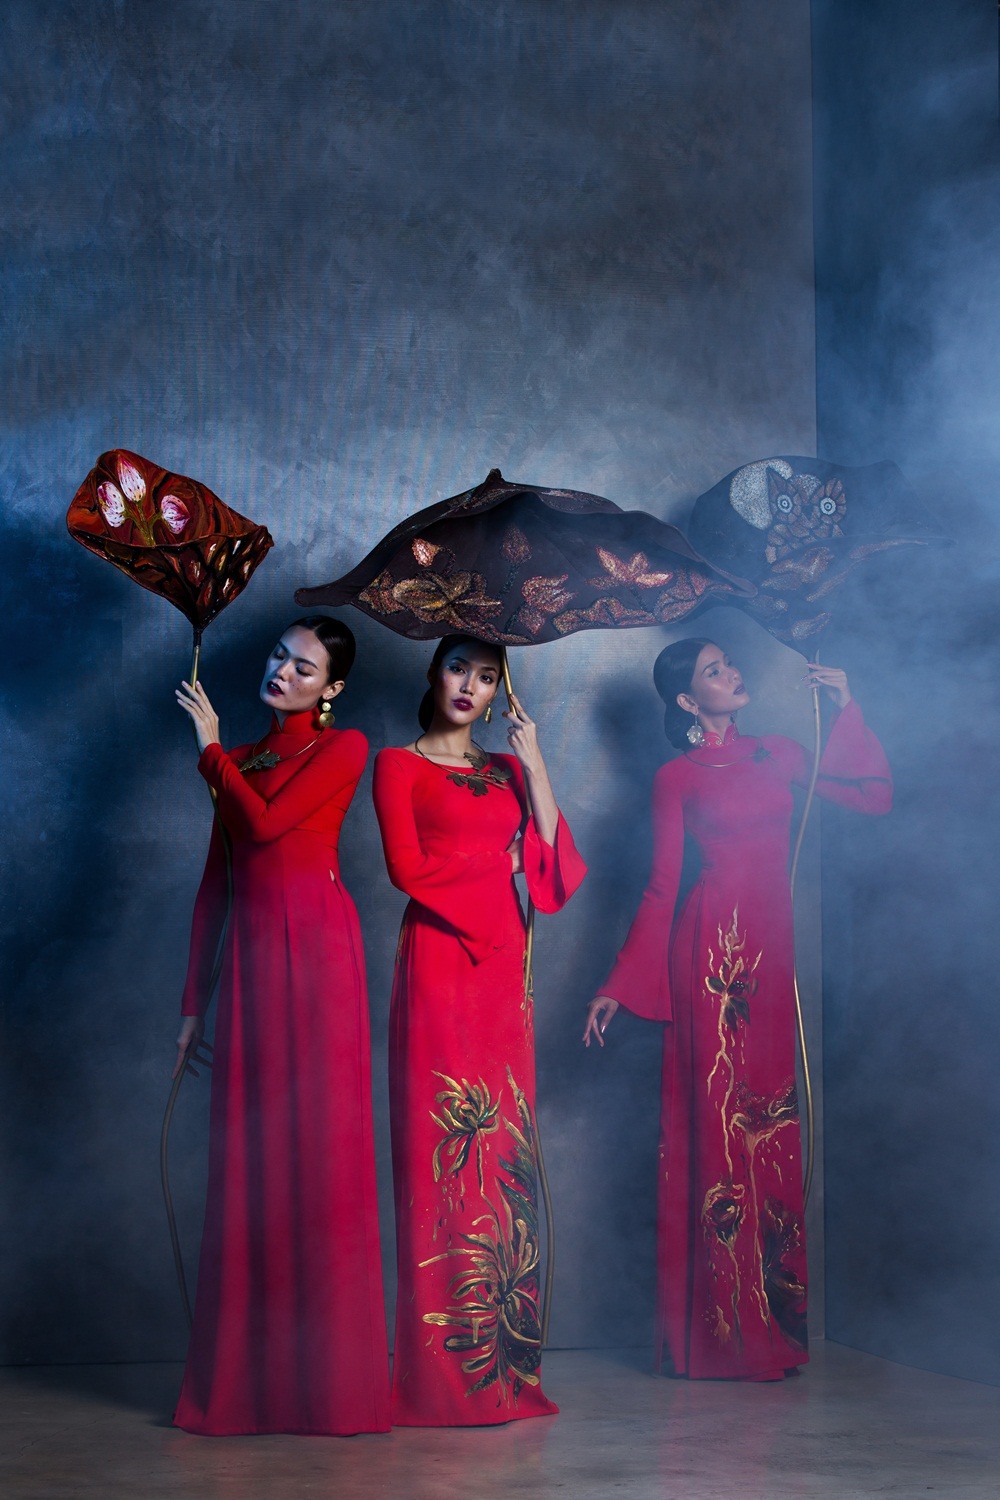 Vốn là những người mẫu có nhiều kinh nghiệm, Trương Thị May dễ dàng lột tả hình ảnh vẻ đẹp phụ nữ Á đông đài các kiêu sa trong những bộ trang phục mềm mại.